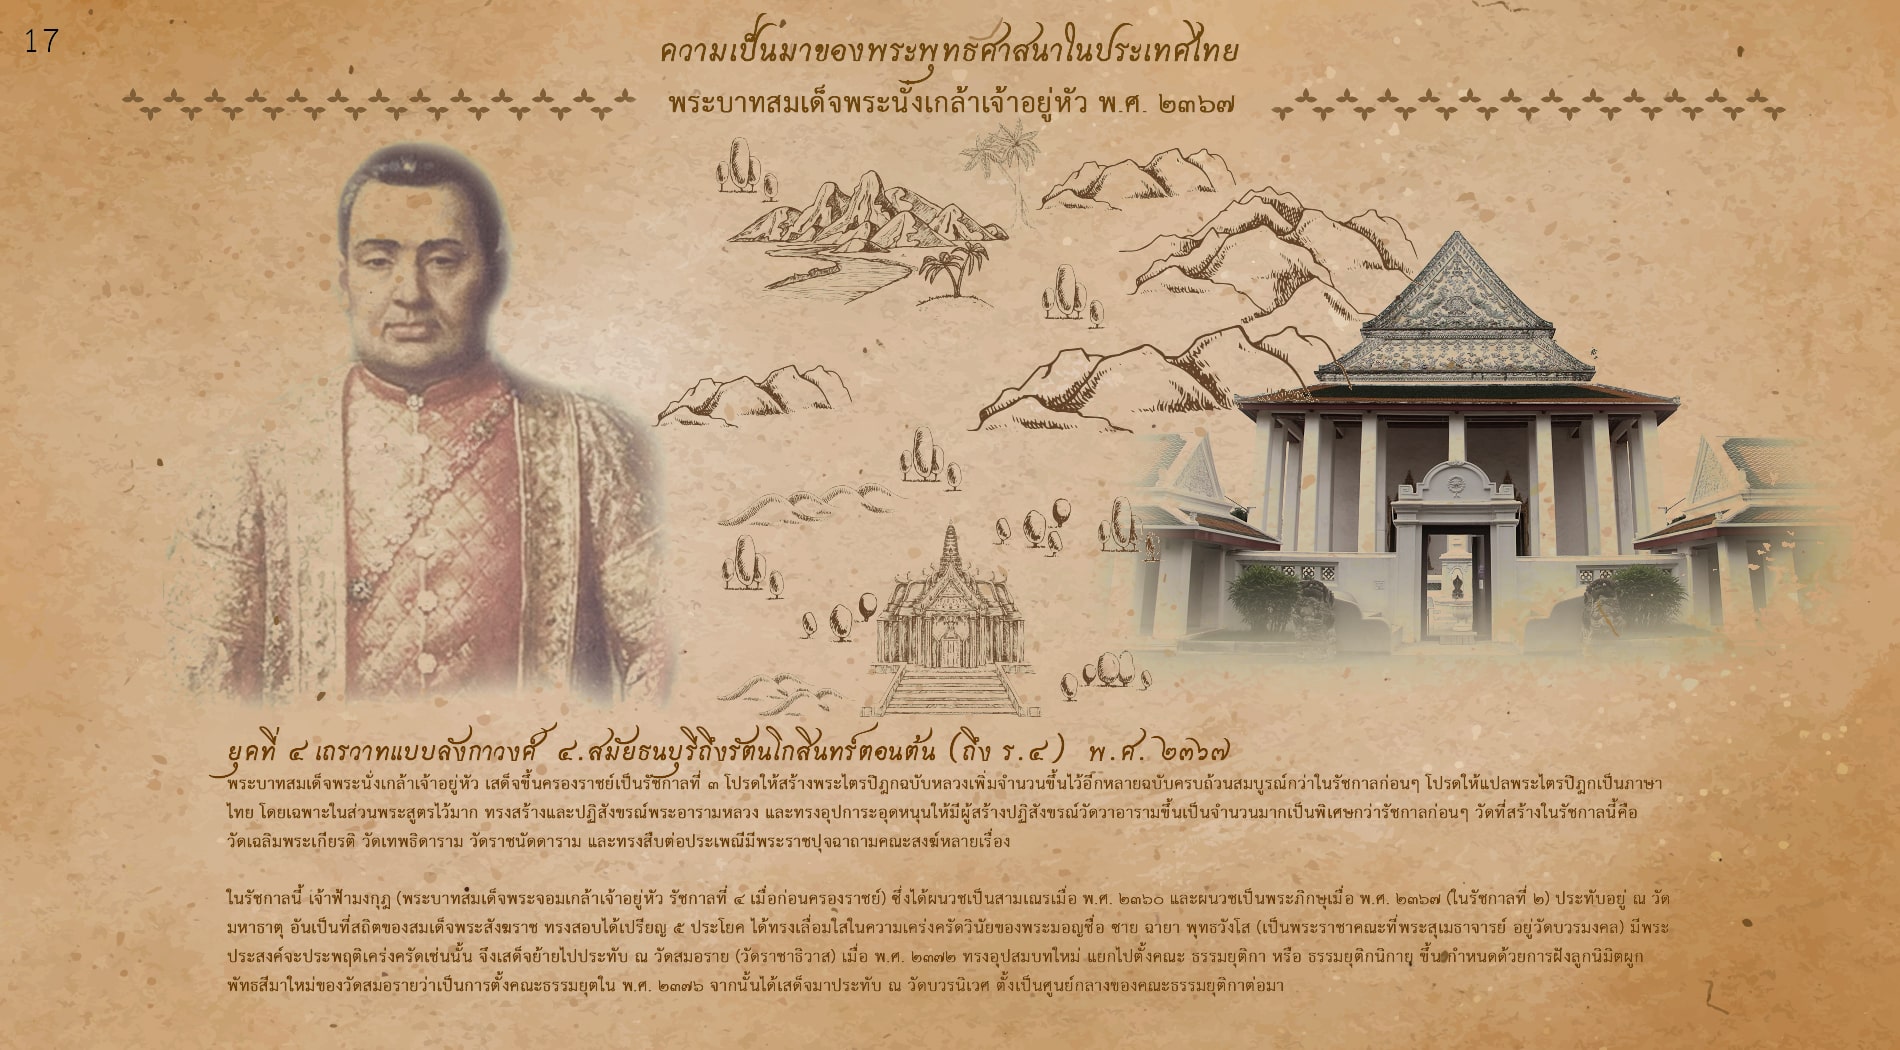 พระบาทสมเด็จพระนั่งเกล้าเจ้าอยู่หัว โปรดให้แปลพระไตรปิฎกเป็นภาษาไทย โดยเฉพาะในส่วนพระสูตรไว้มาก